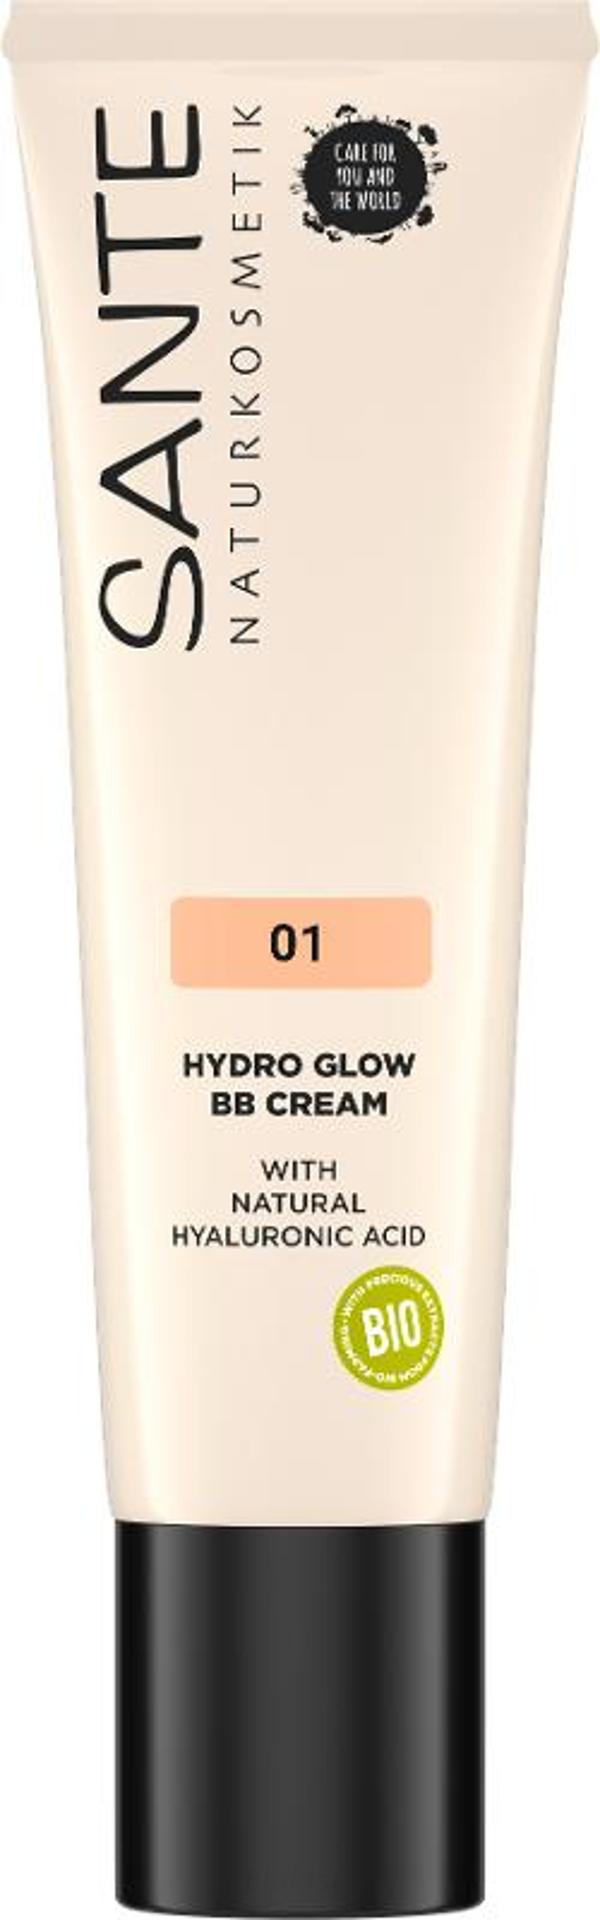 Produktfoto zu Hydro Glow BB Cream 01